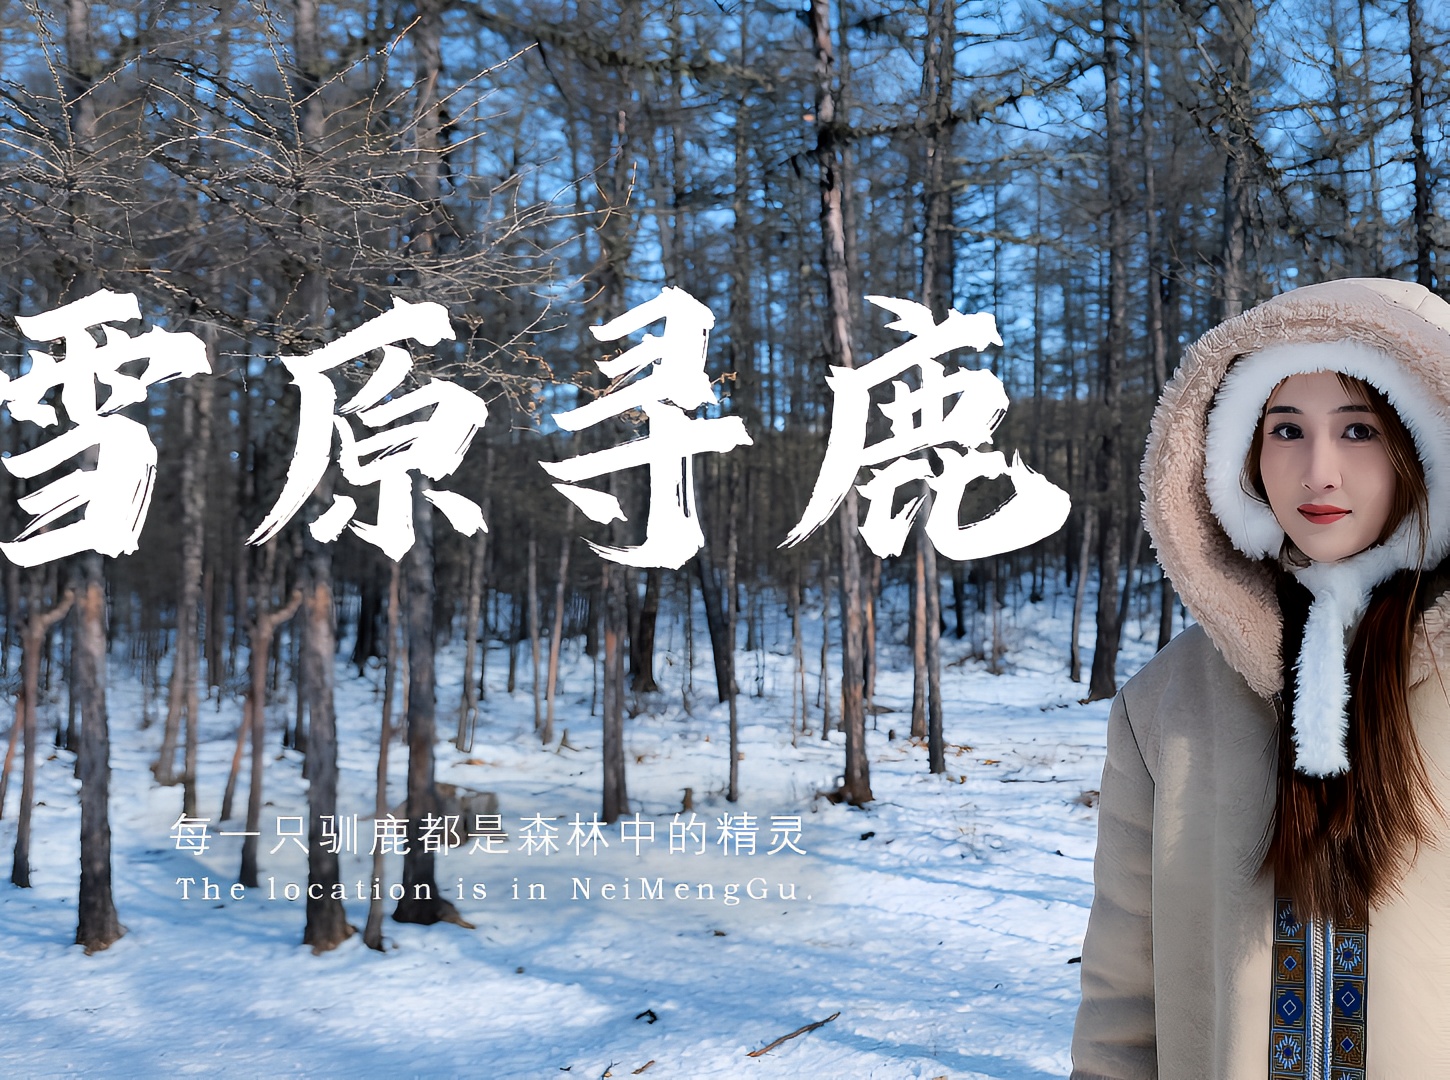 冷极村驯鹿 林深时见鹿  这个冬天 我在中国冷极 探访中国最后一个驯鹿部落 追逐一场冰雪童话的梦 走